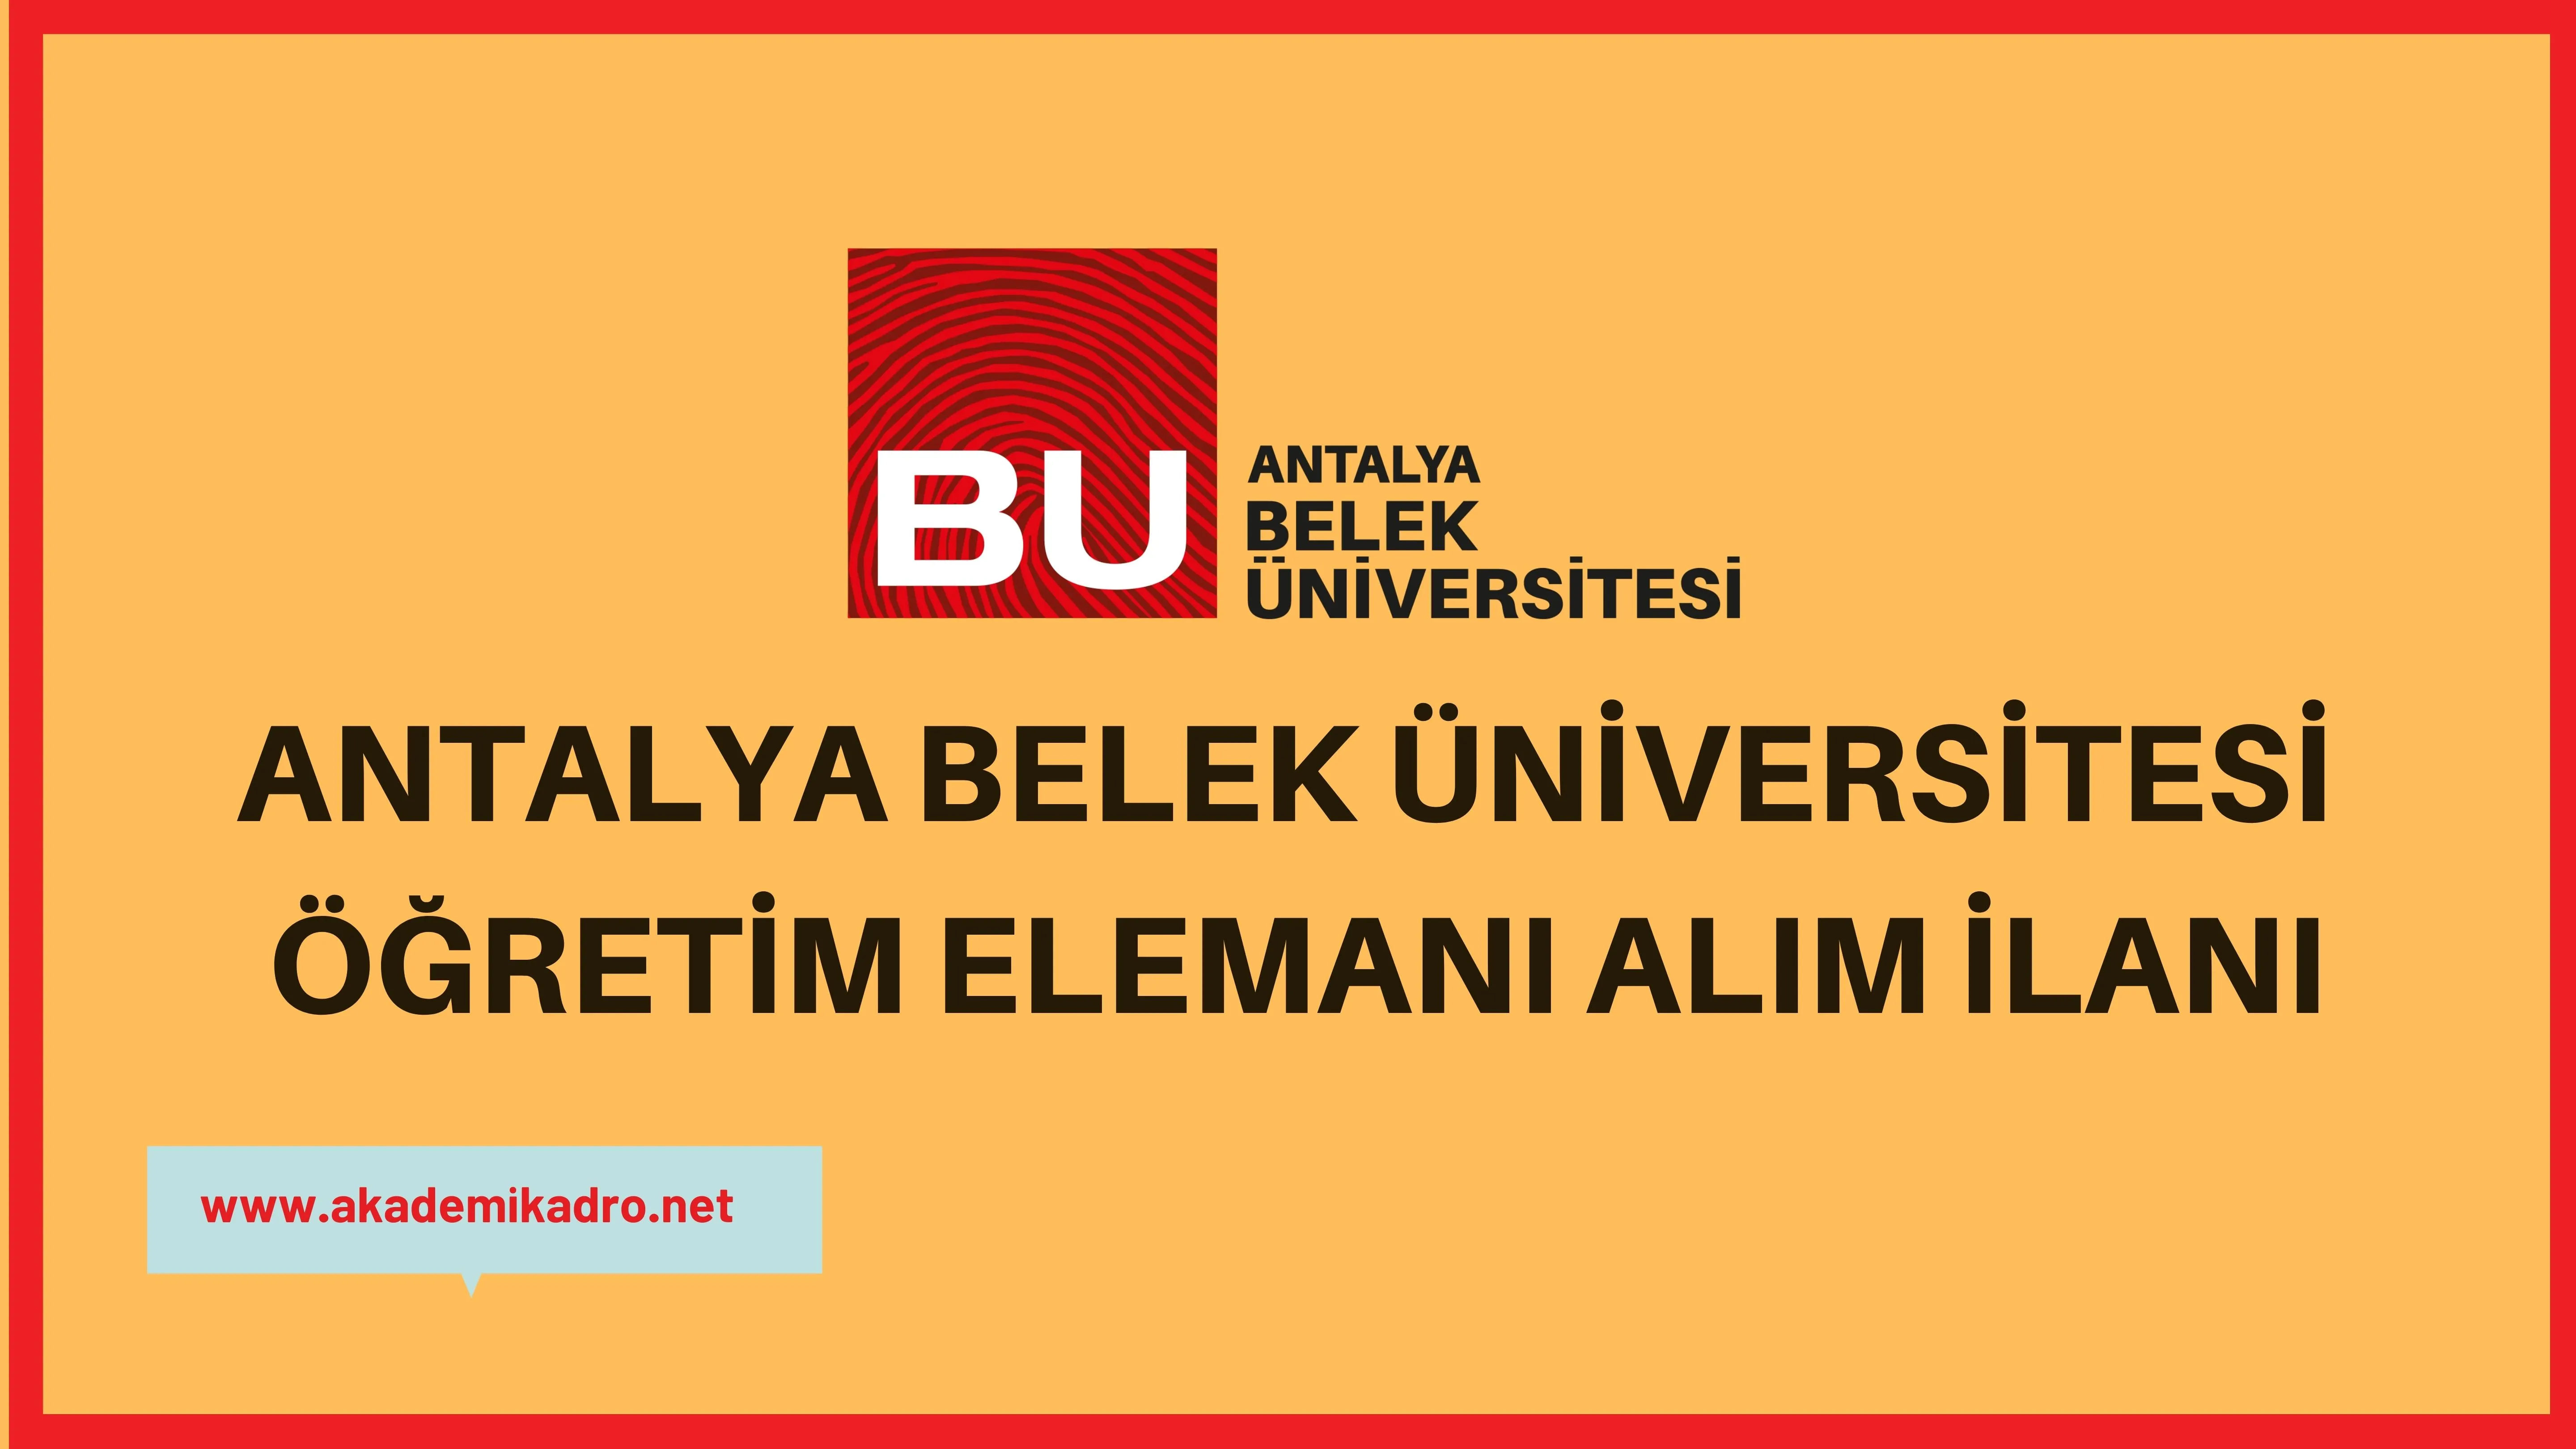 Antalya Belek Üniversitesi 6 Araştırma görevlisi, 4 Öğretim görevlisi ve 15 öğretim üyesi olmak üzere 25 öğretim elemanı alacak.